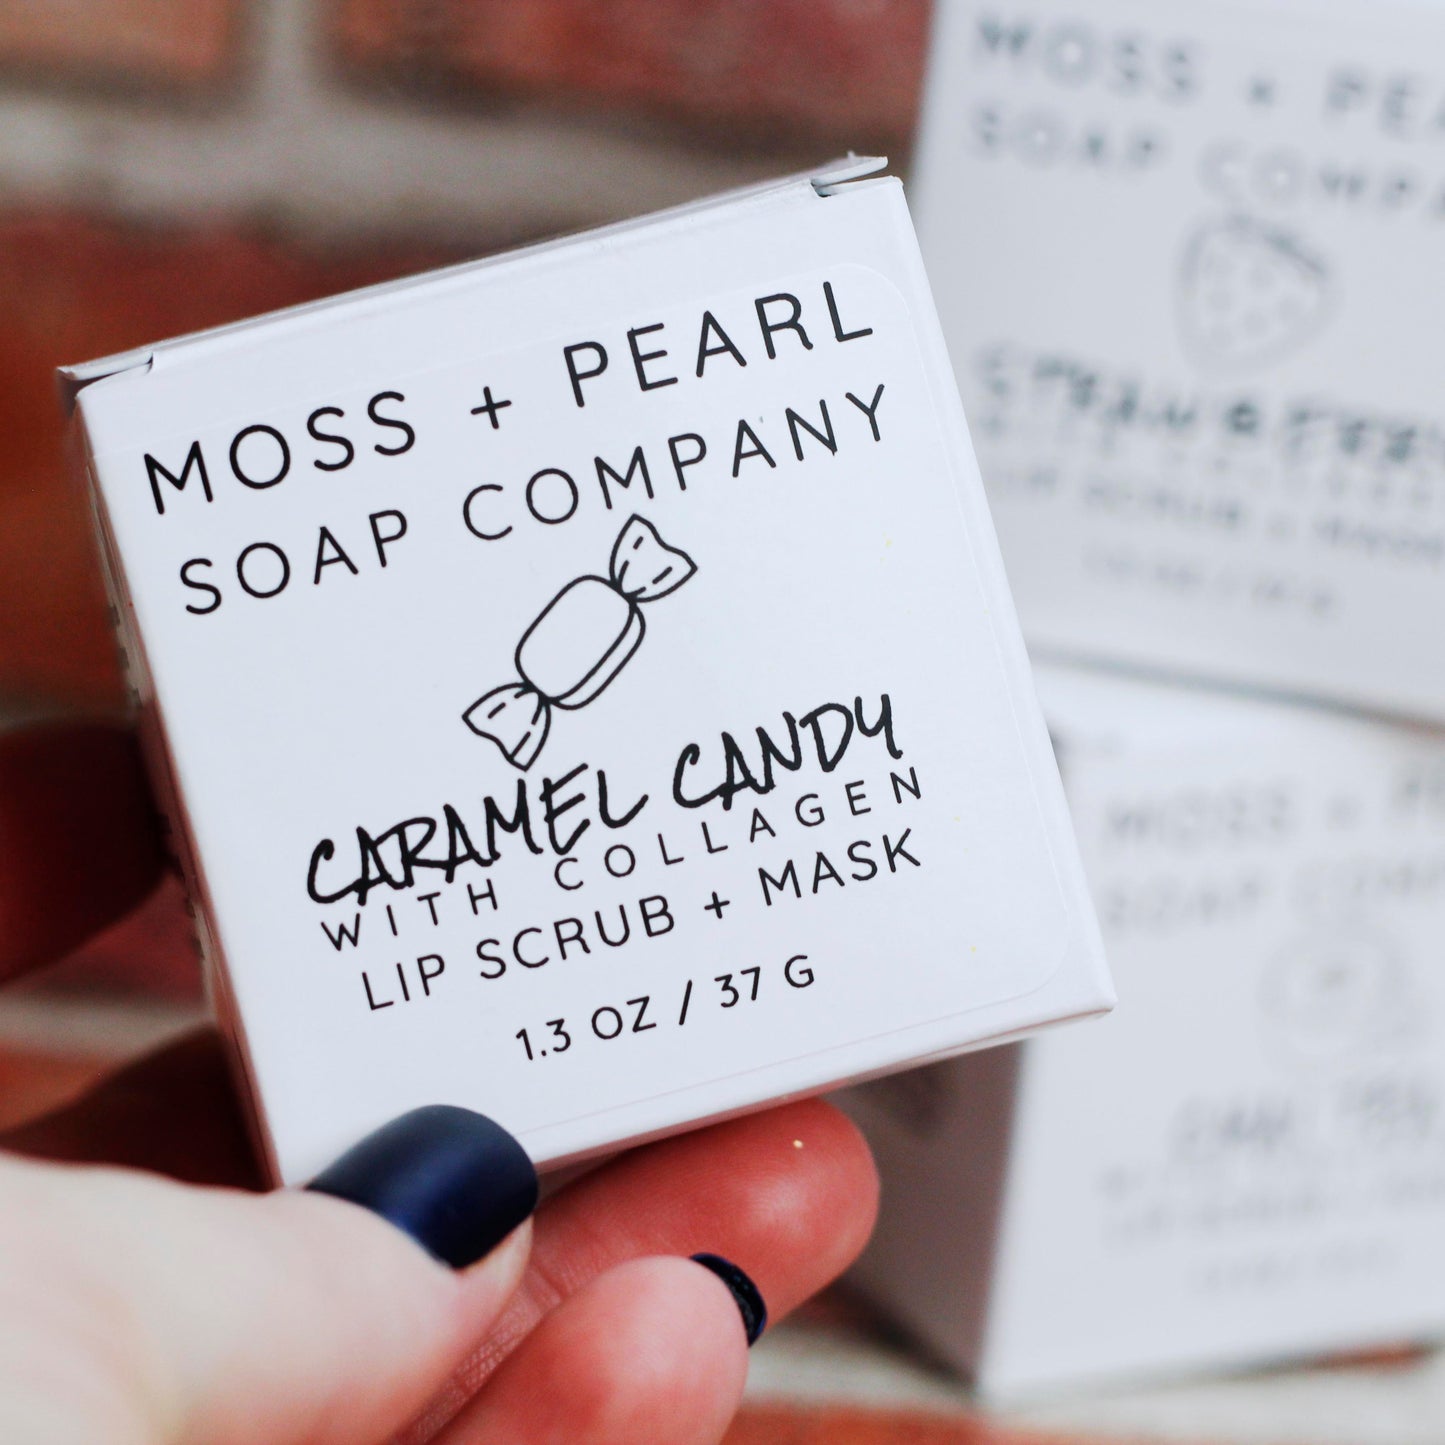 LIP SCRUB + MASK Moss + Pearl Soap Company